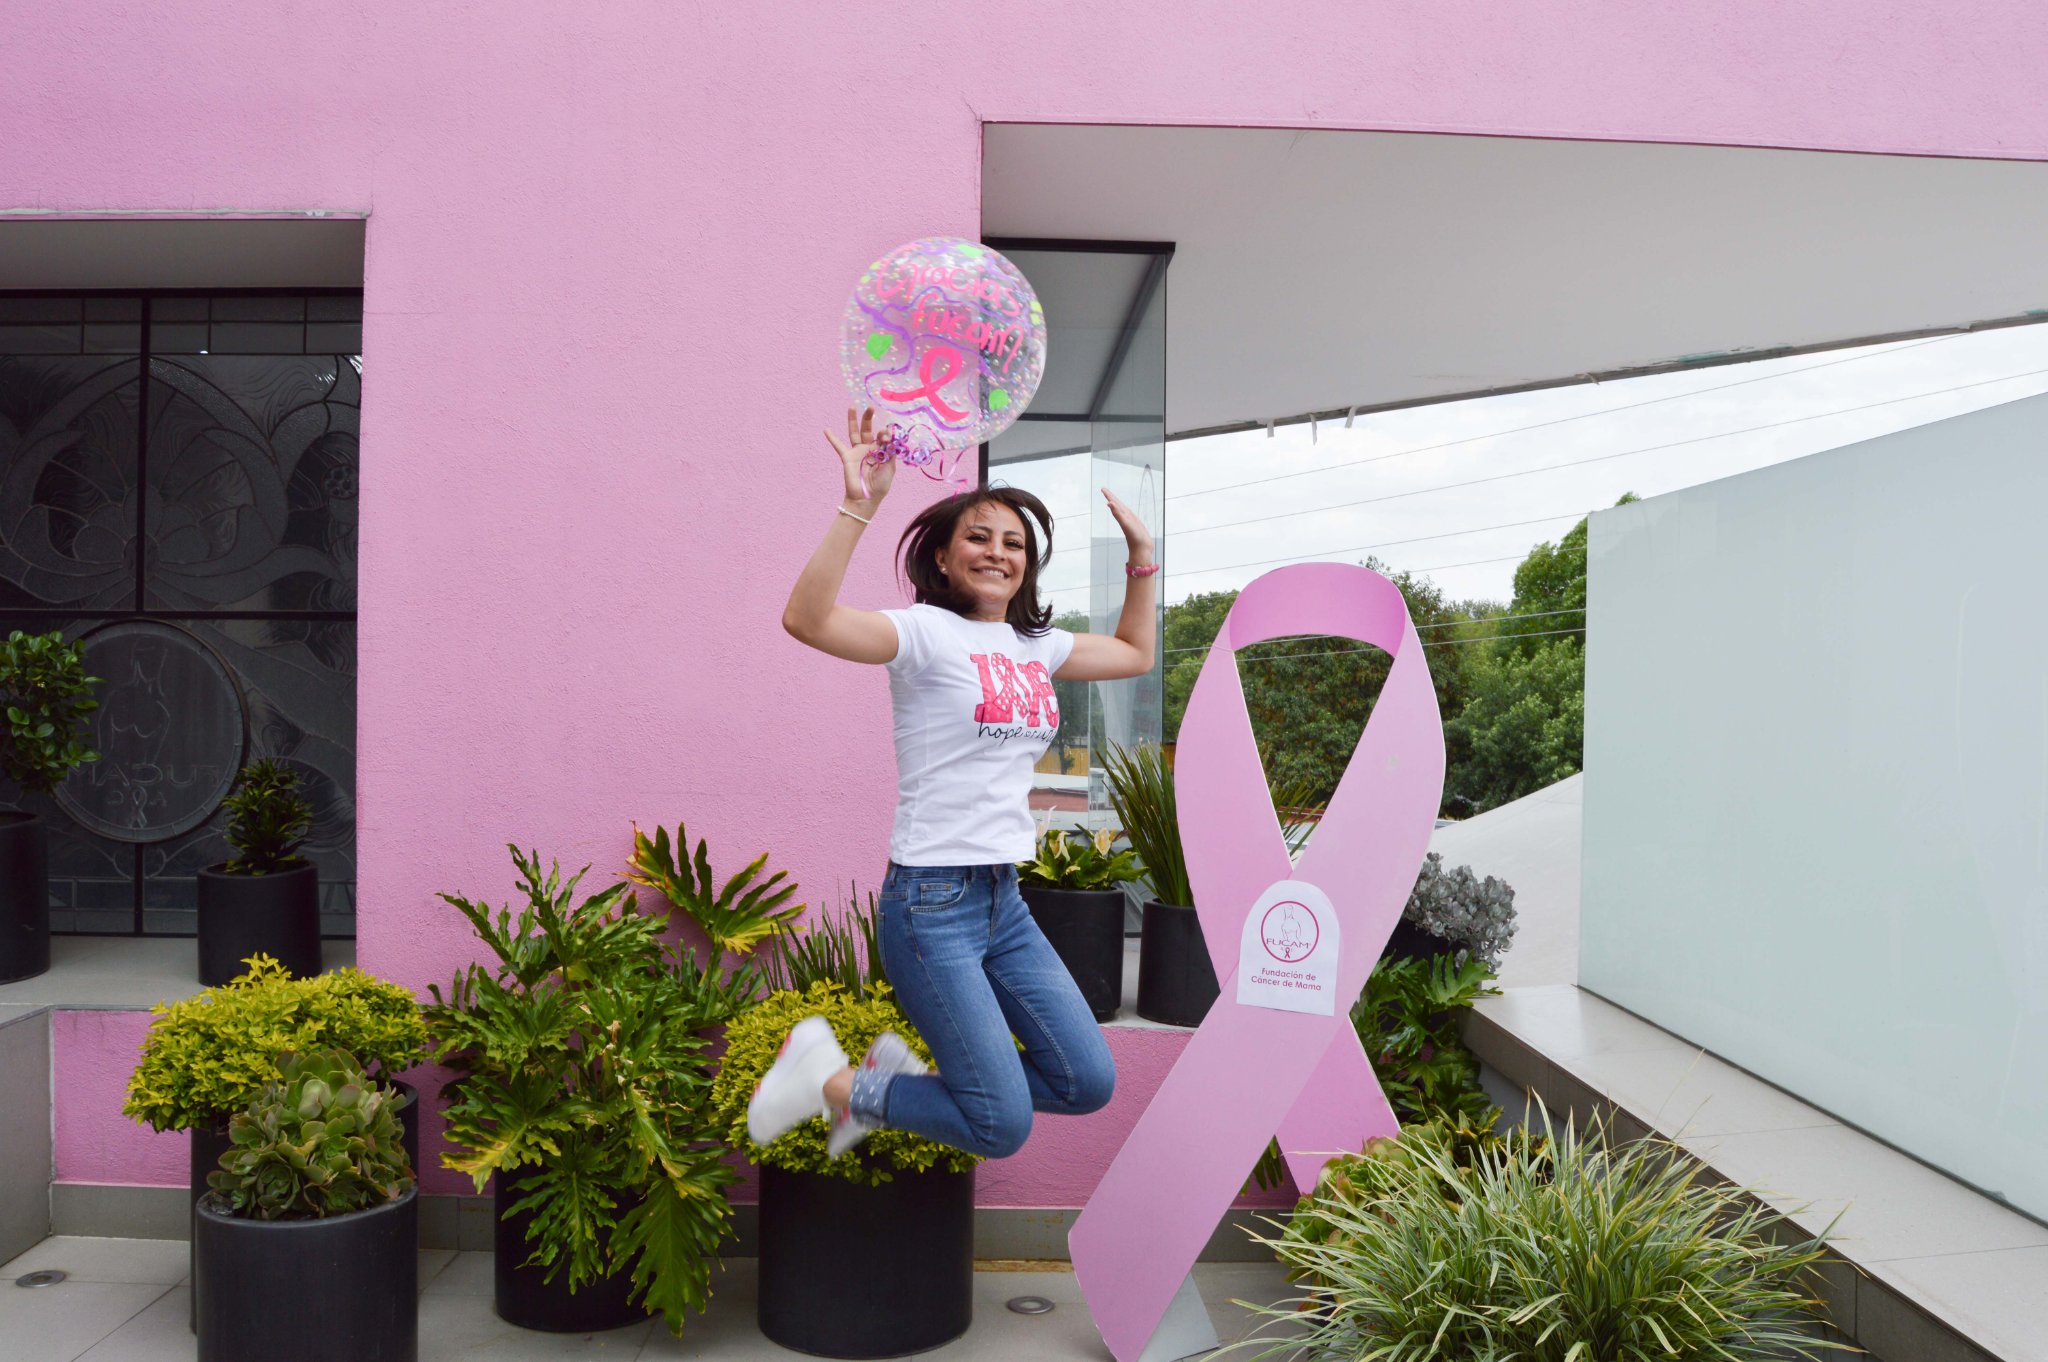 Una de cada siete mujeres desarrollará cáncer de mama en su vida